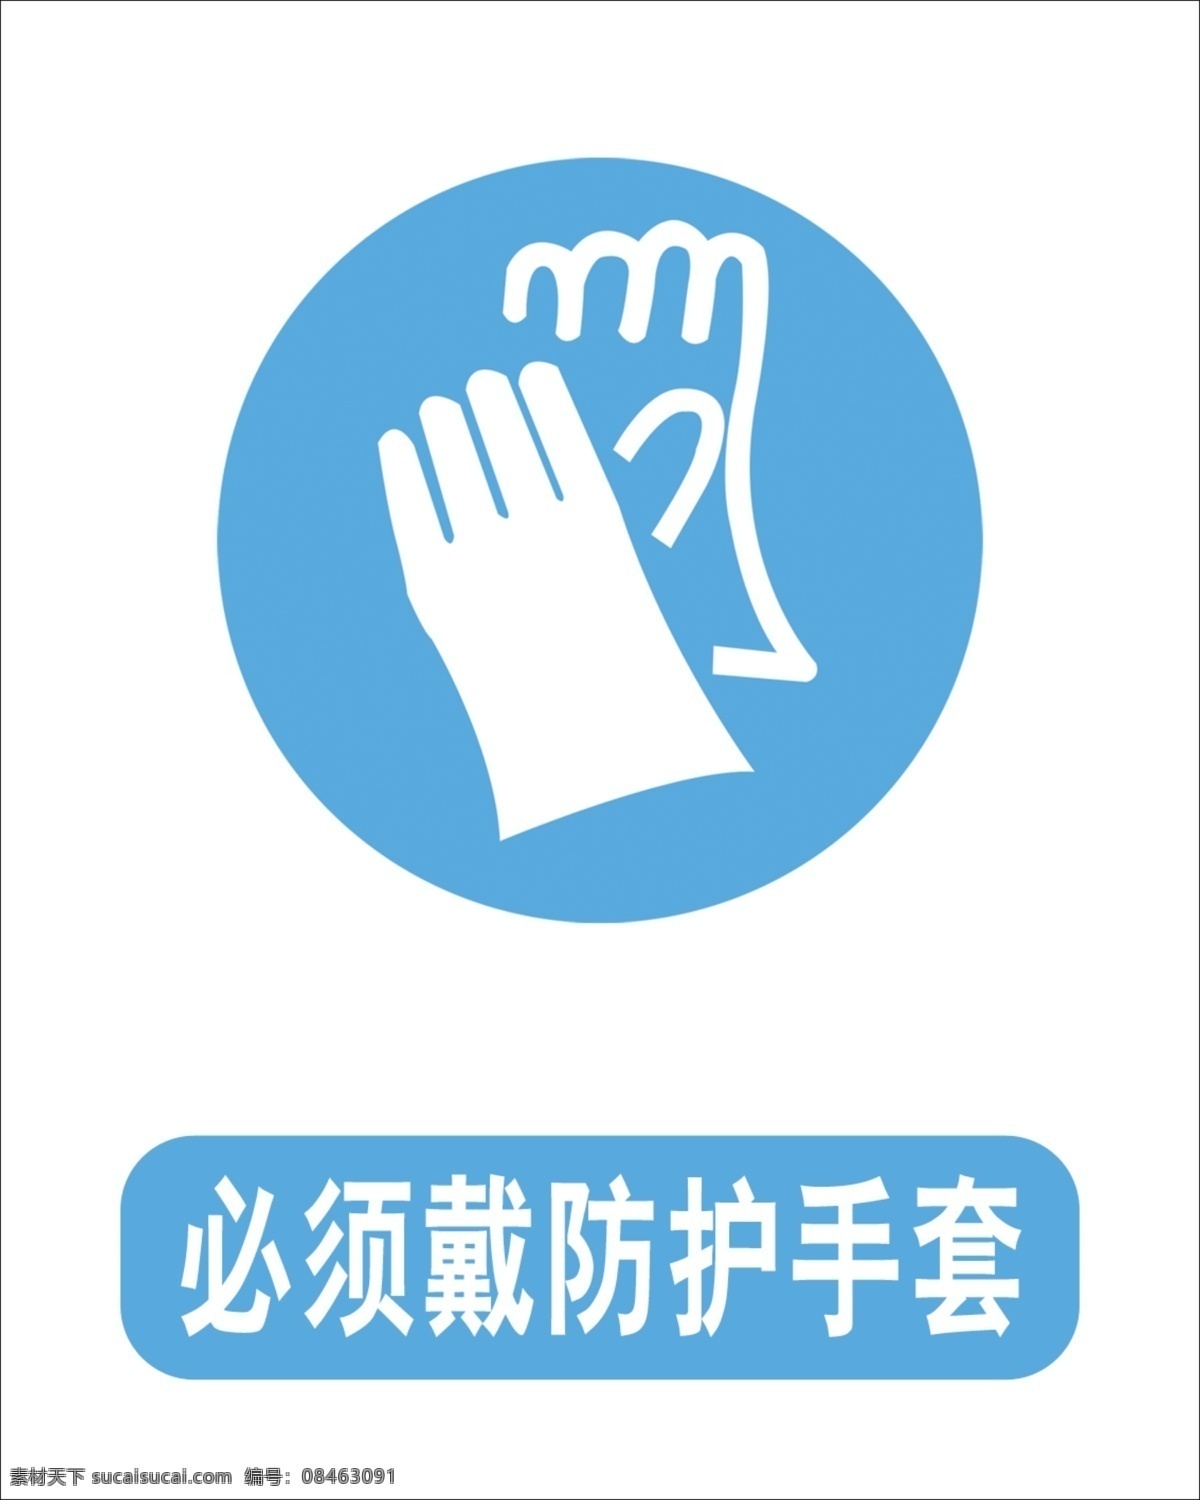 广告设计模板 喷绘 其他模版 源文件 必须 戴 手套 标志 模板下载 工厂标志